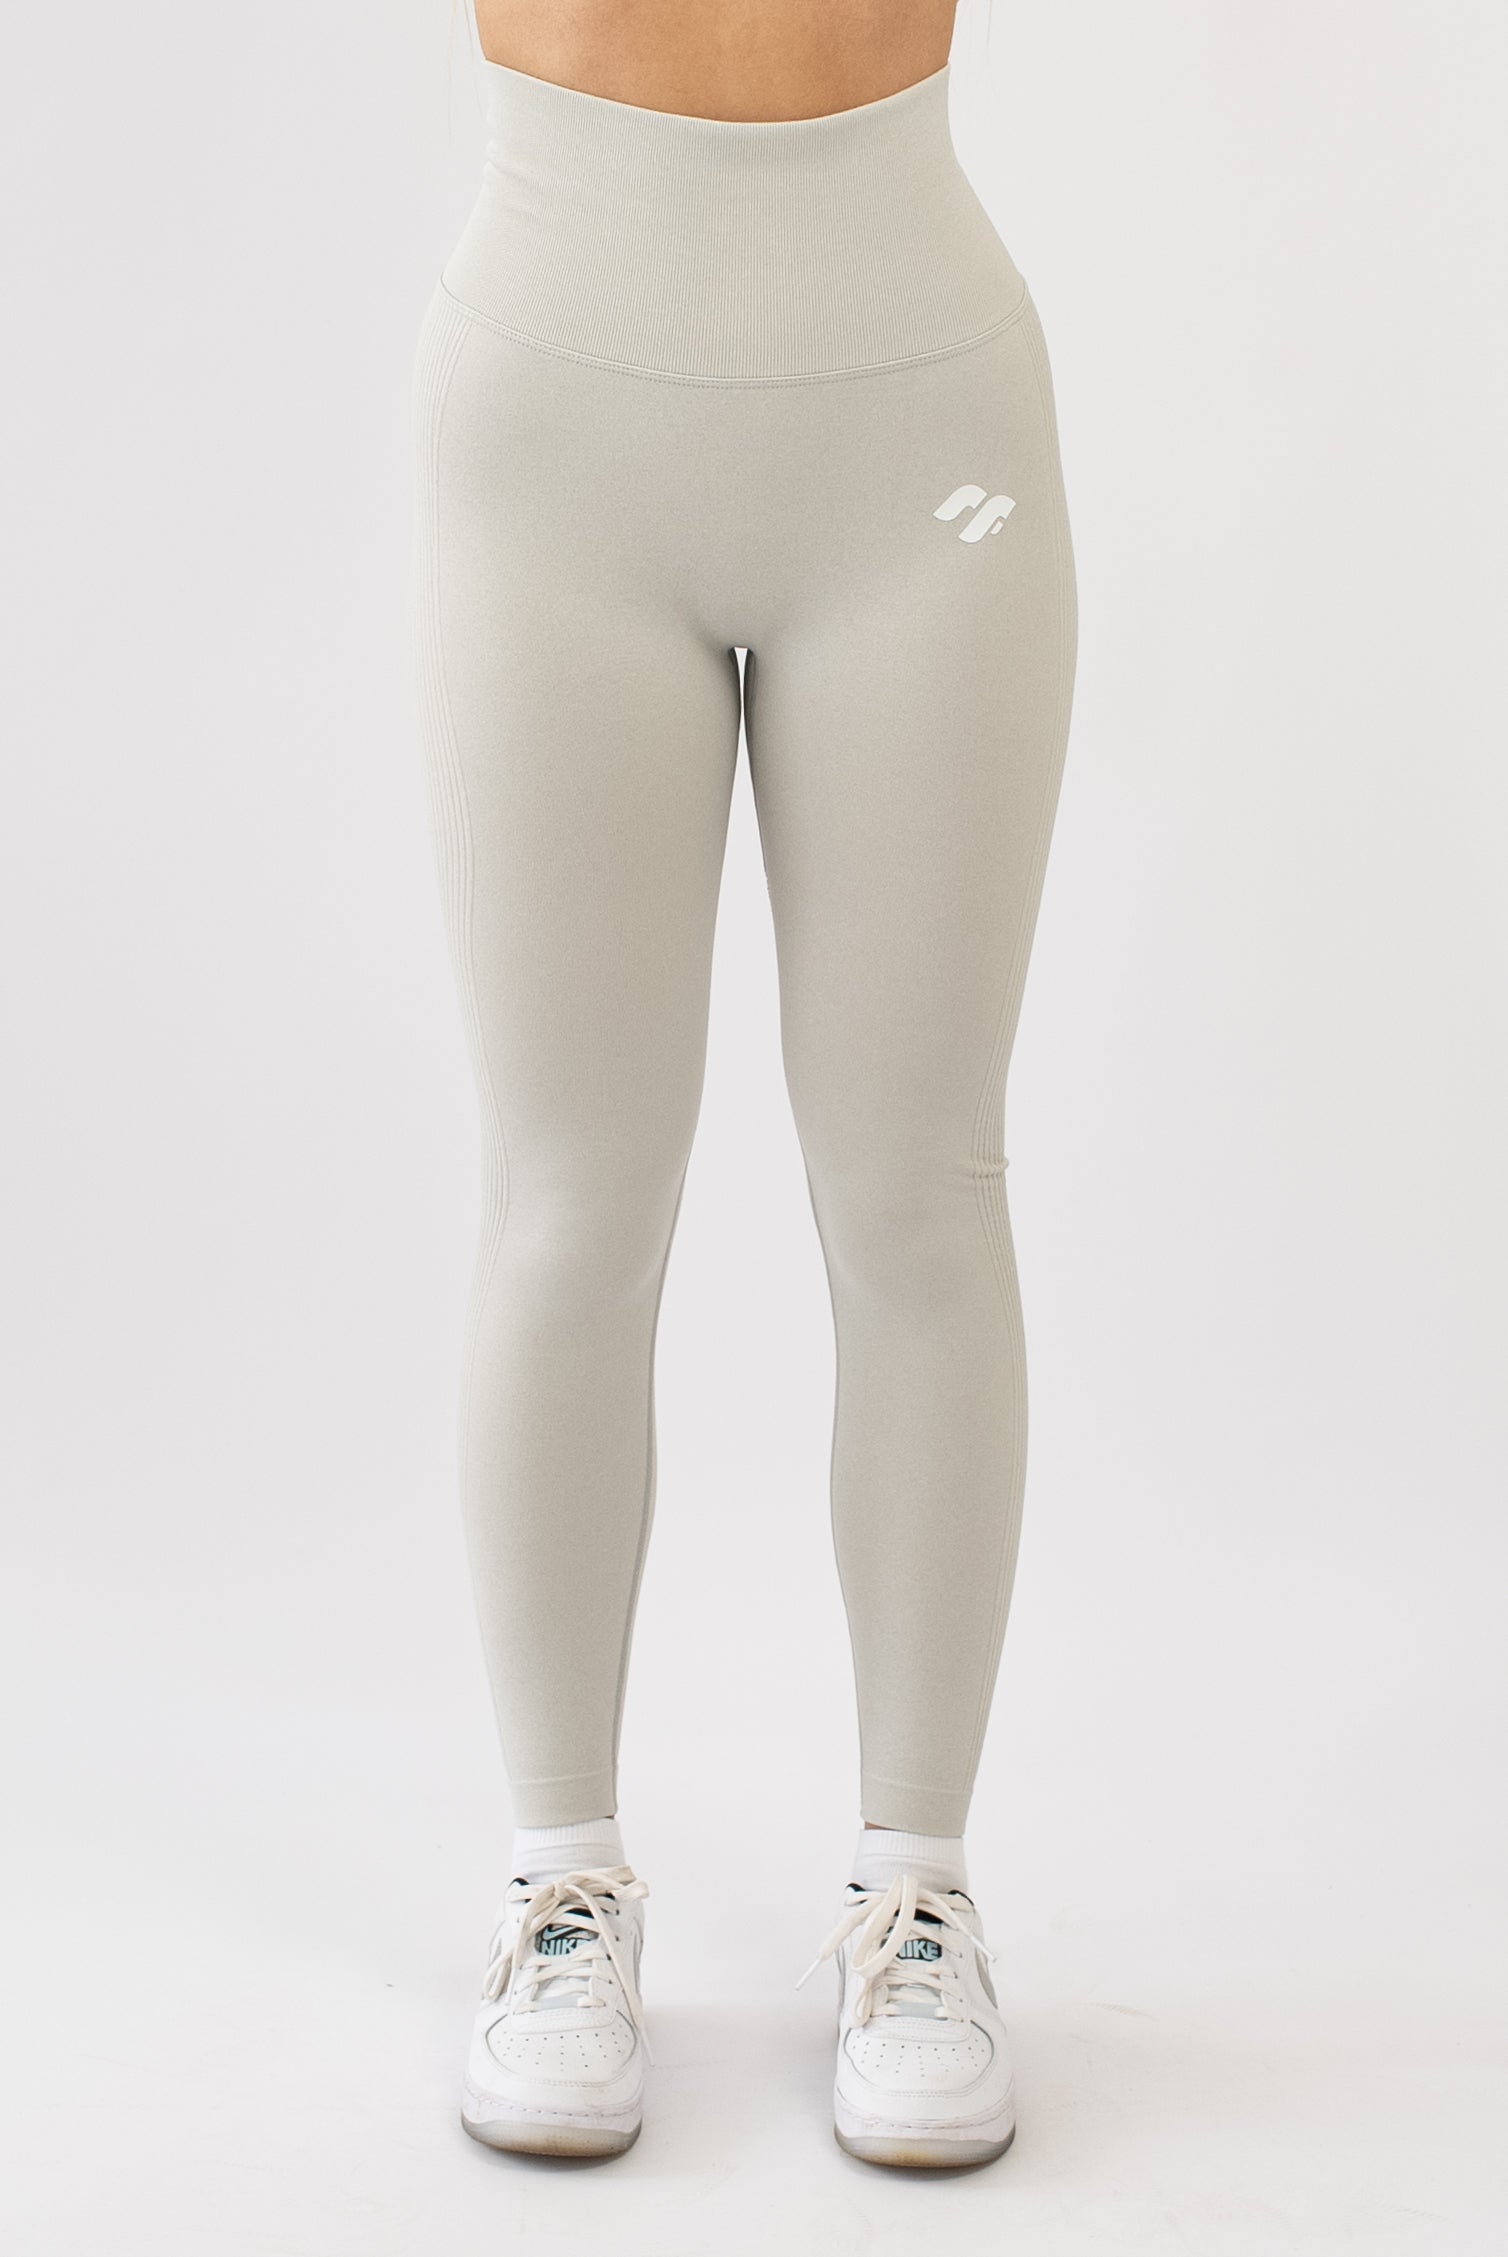 2021 New Seamless Yoga Pant High Elastic Sports Fitness Legging Women High  Waist Gym Scrunch Butt